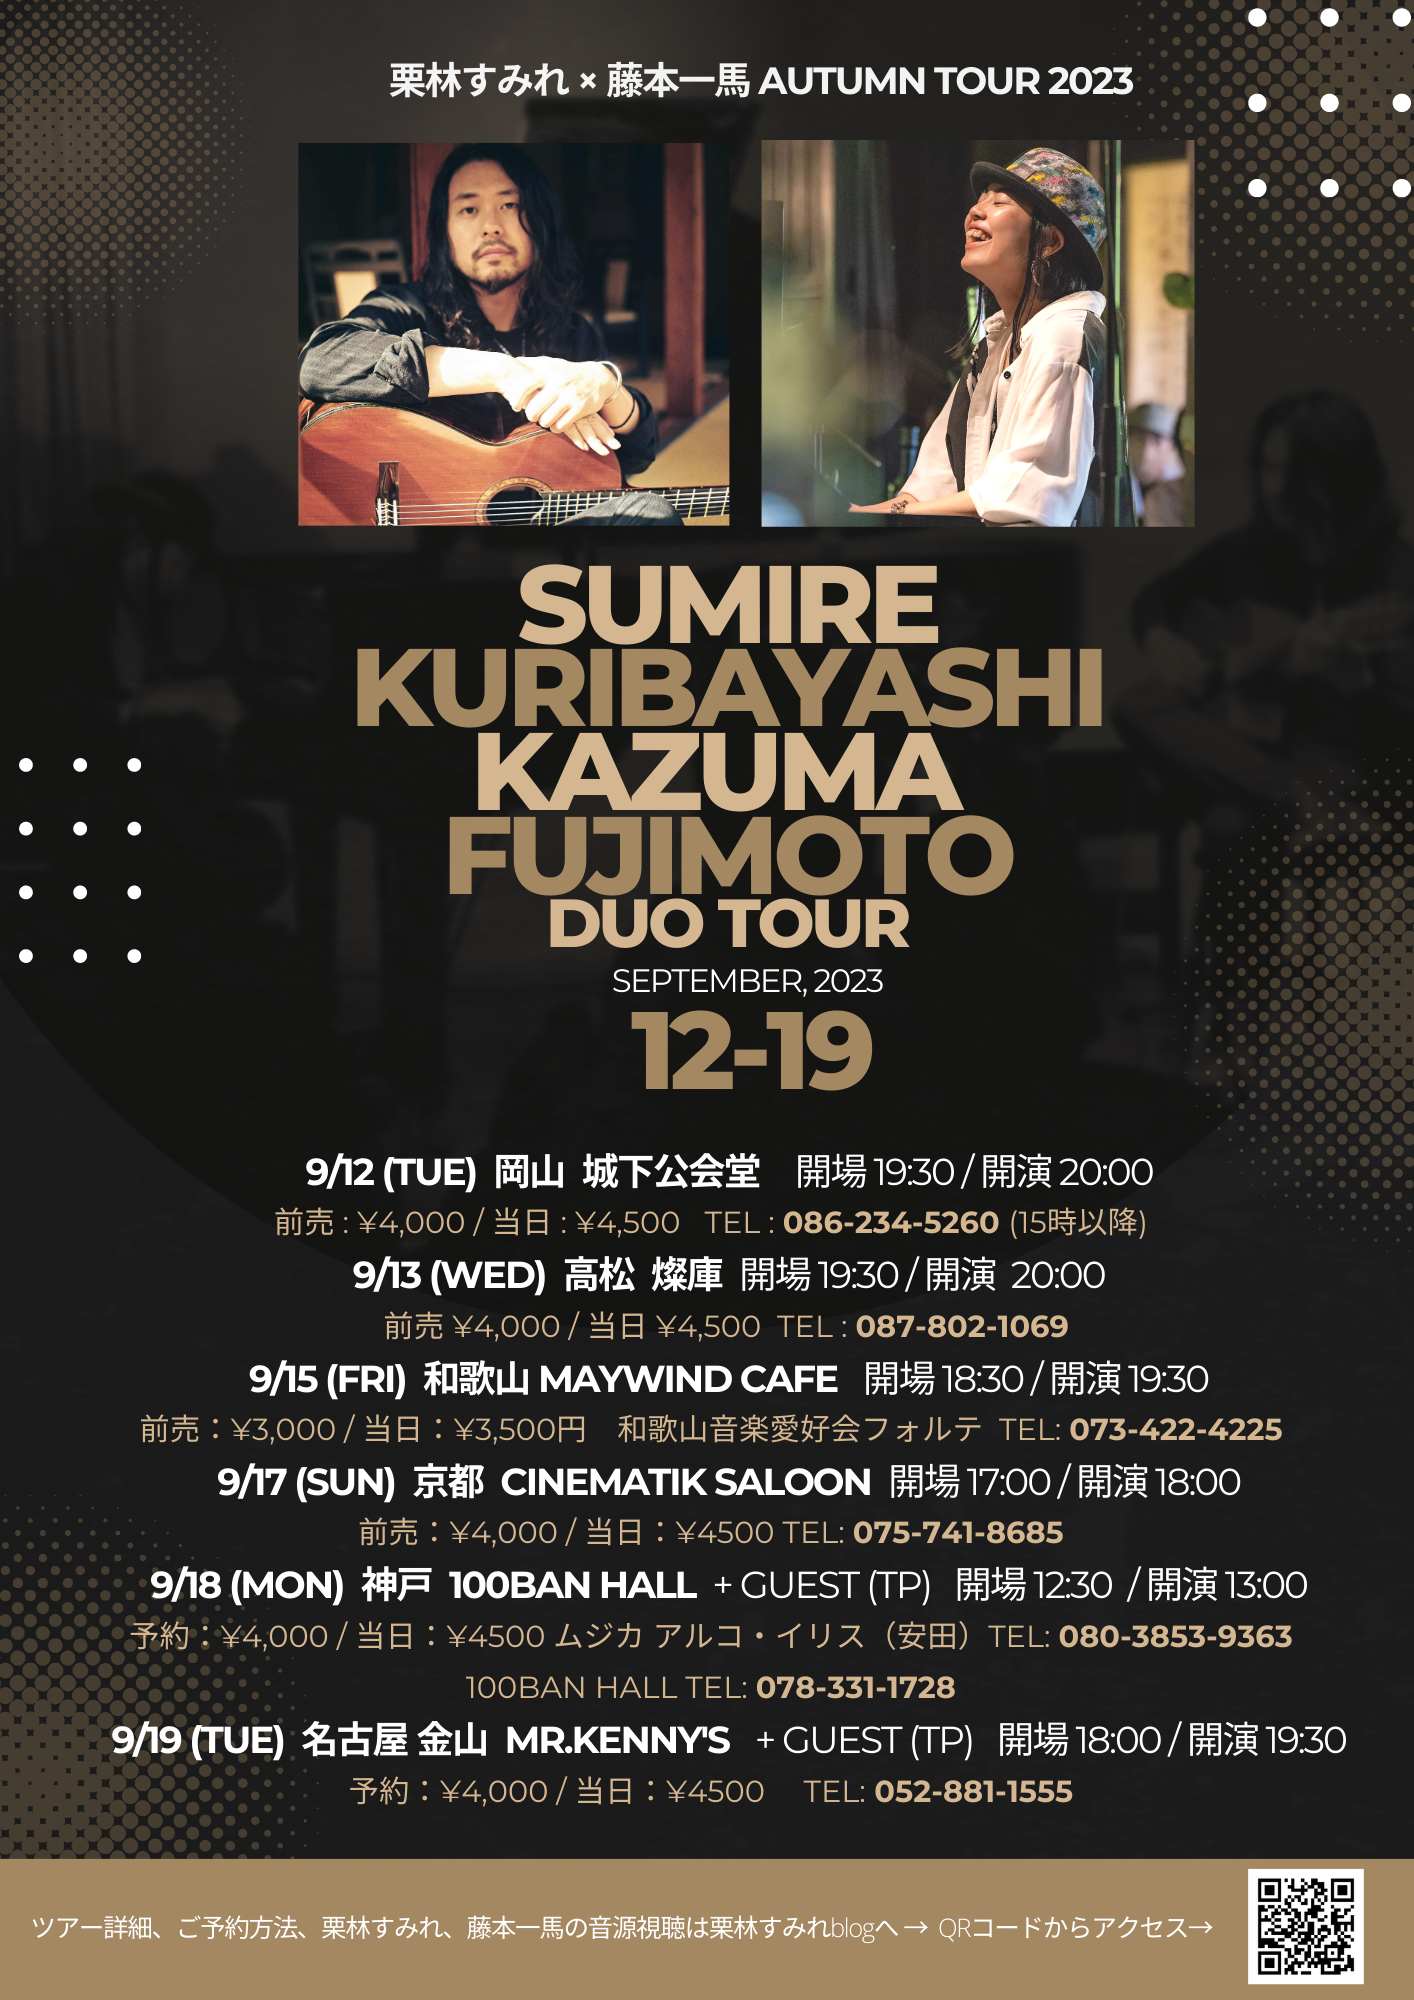 栗林すみれ & 藤本一馬 DUO TOUR AUTUMN 2023 in KOBE | 神戸旧居留地 